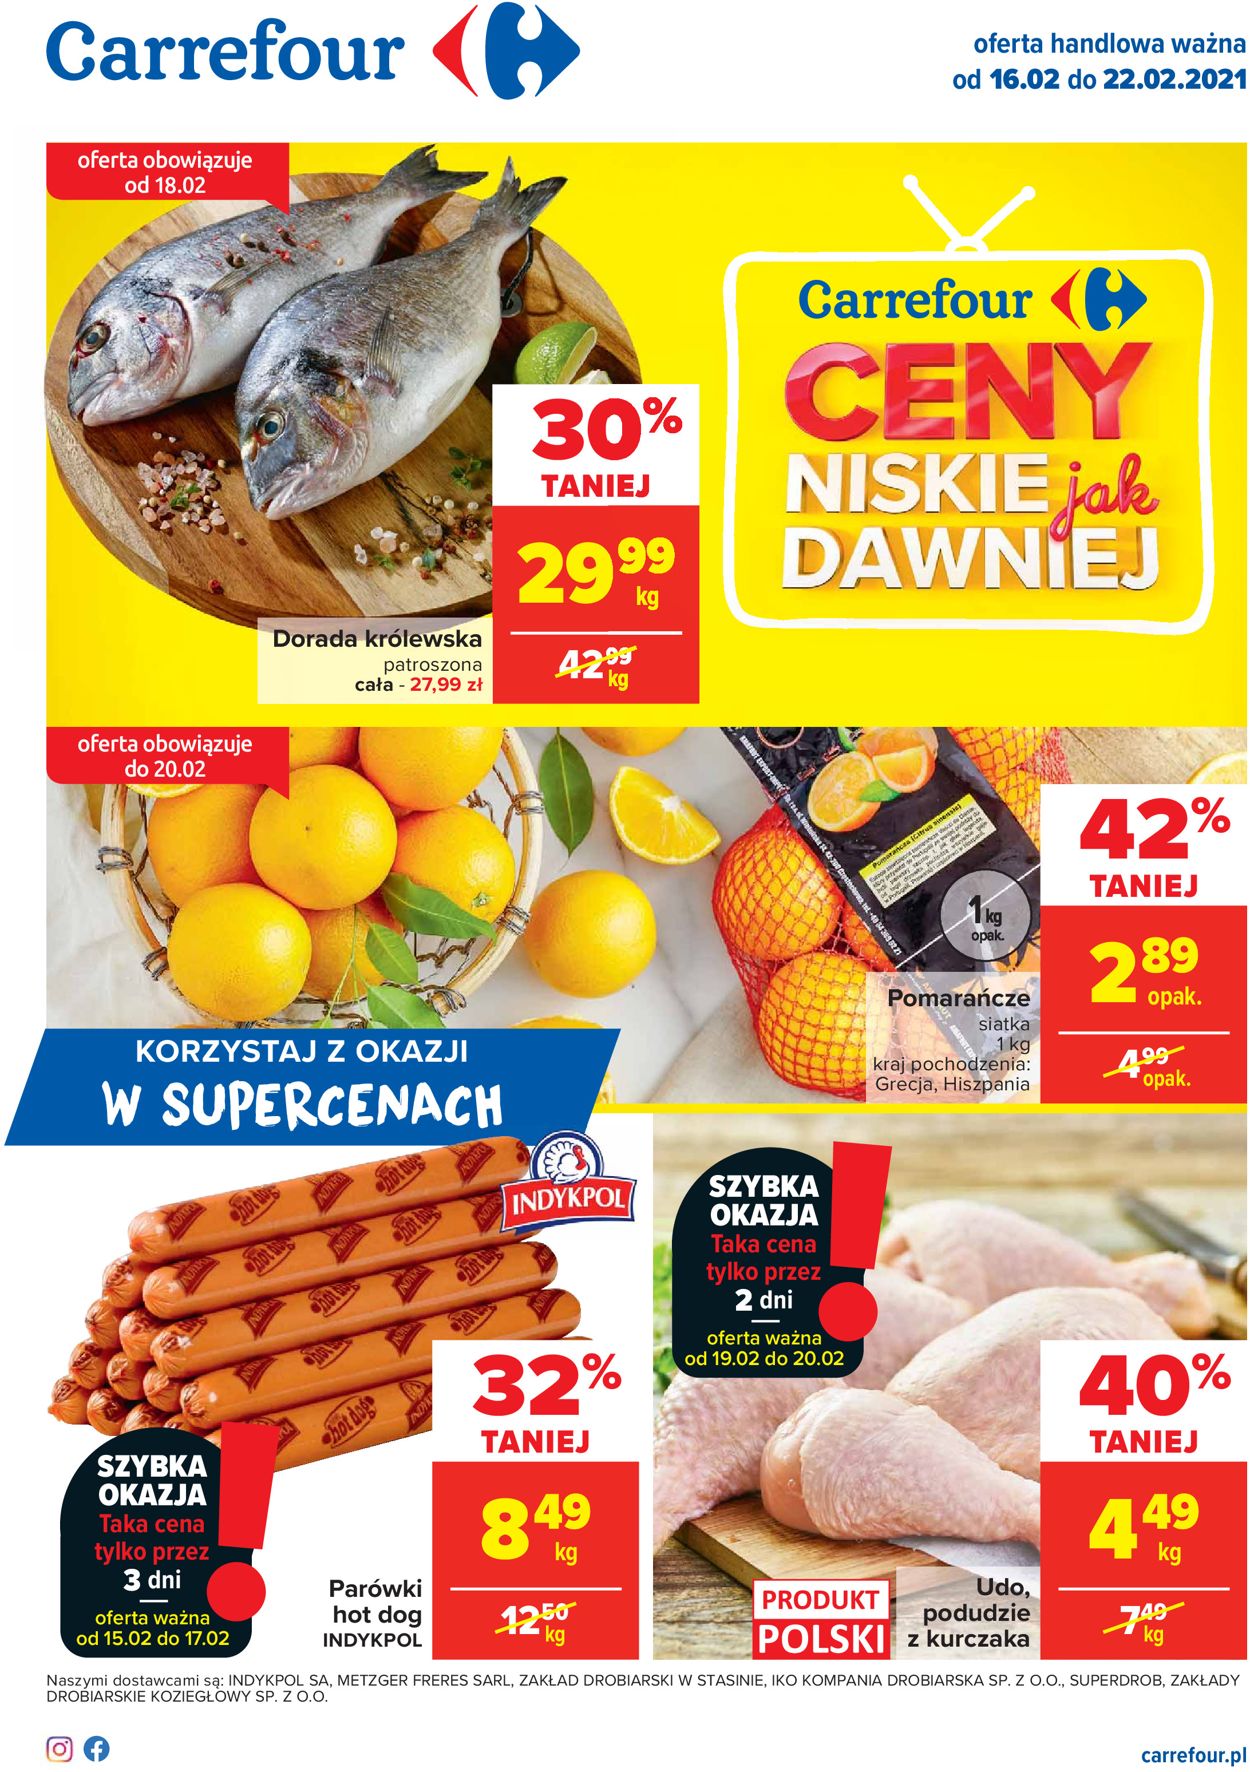 Carrefour Gazetka od 16.02.2021